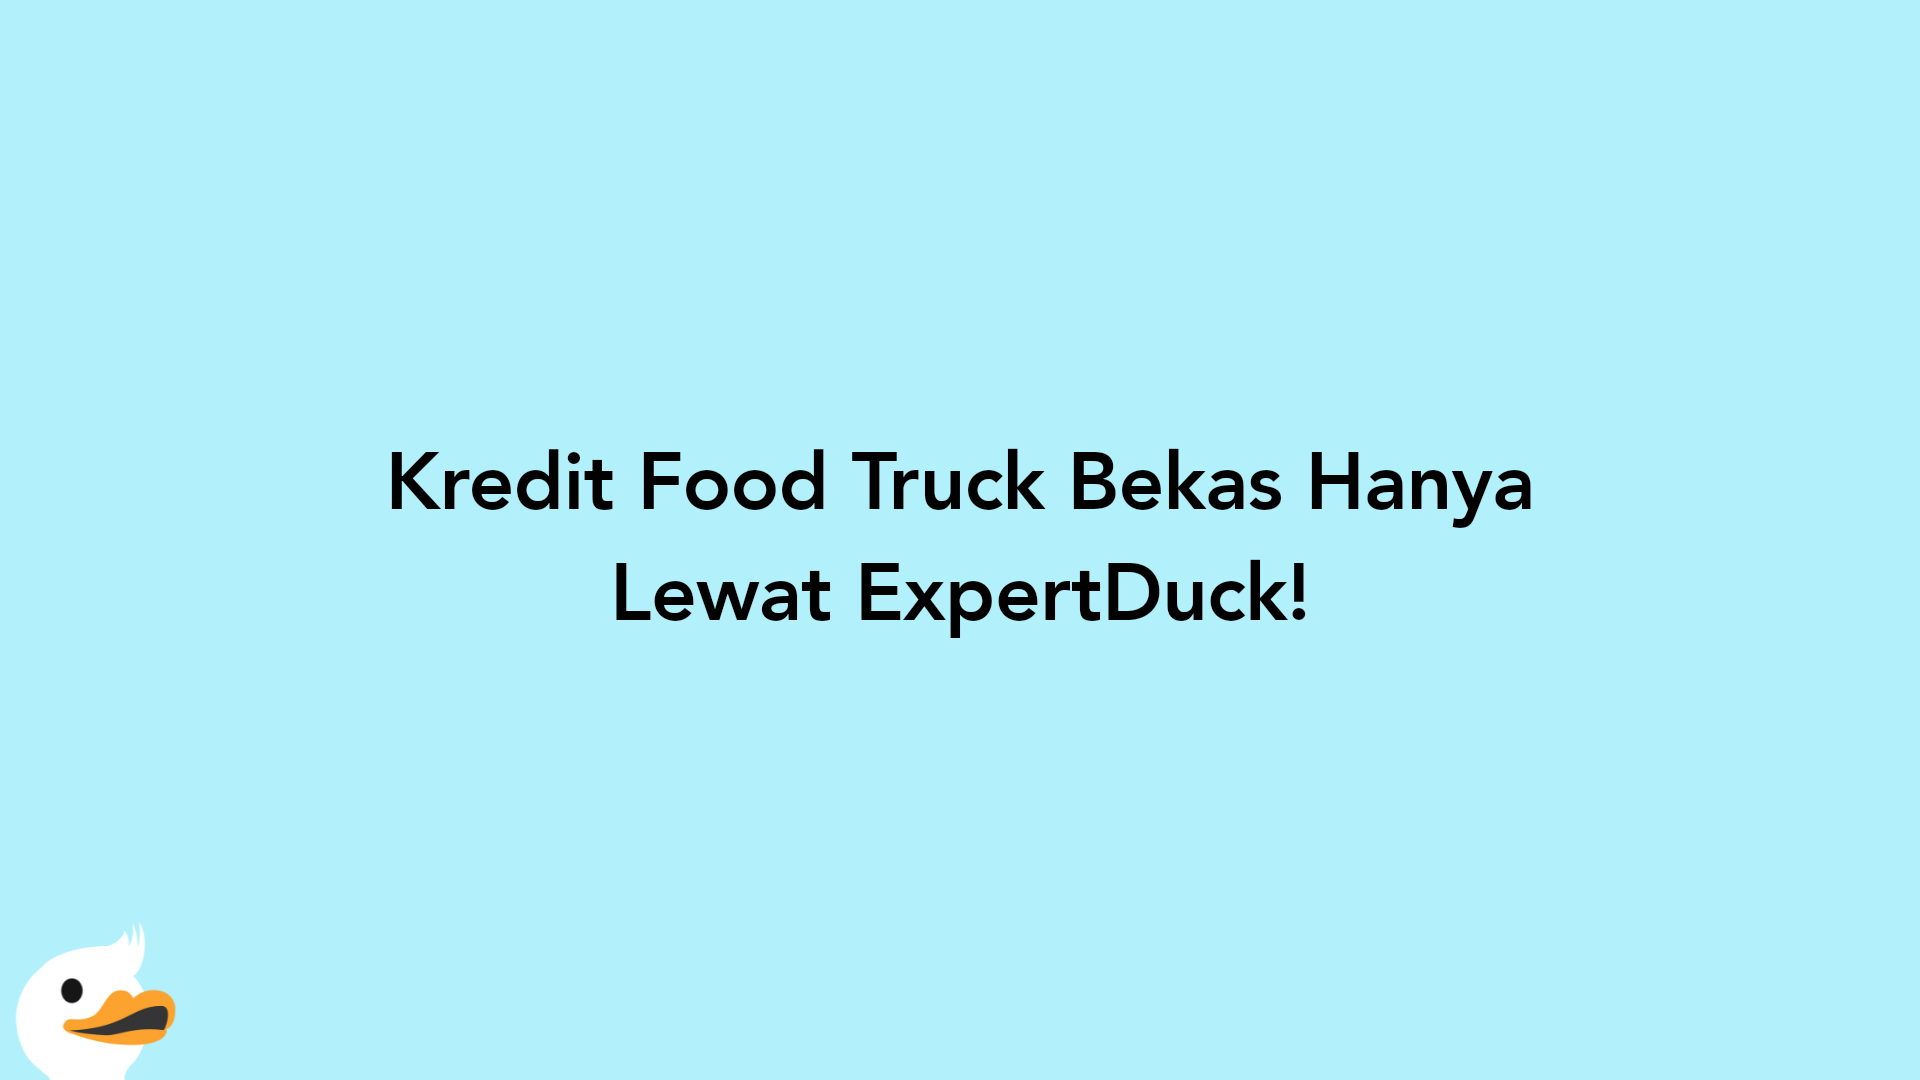 Kredit Food Truck Bekas Hanya Lewat ExpertDuck!